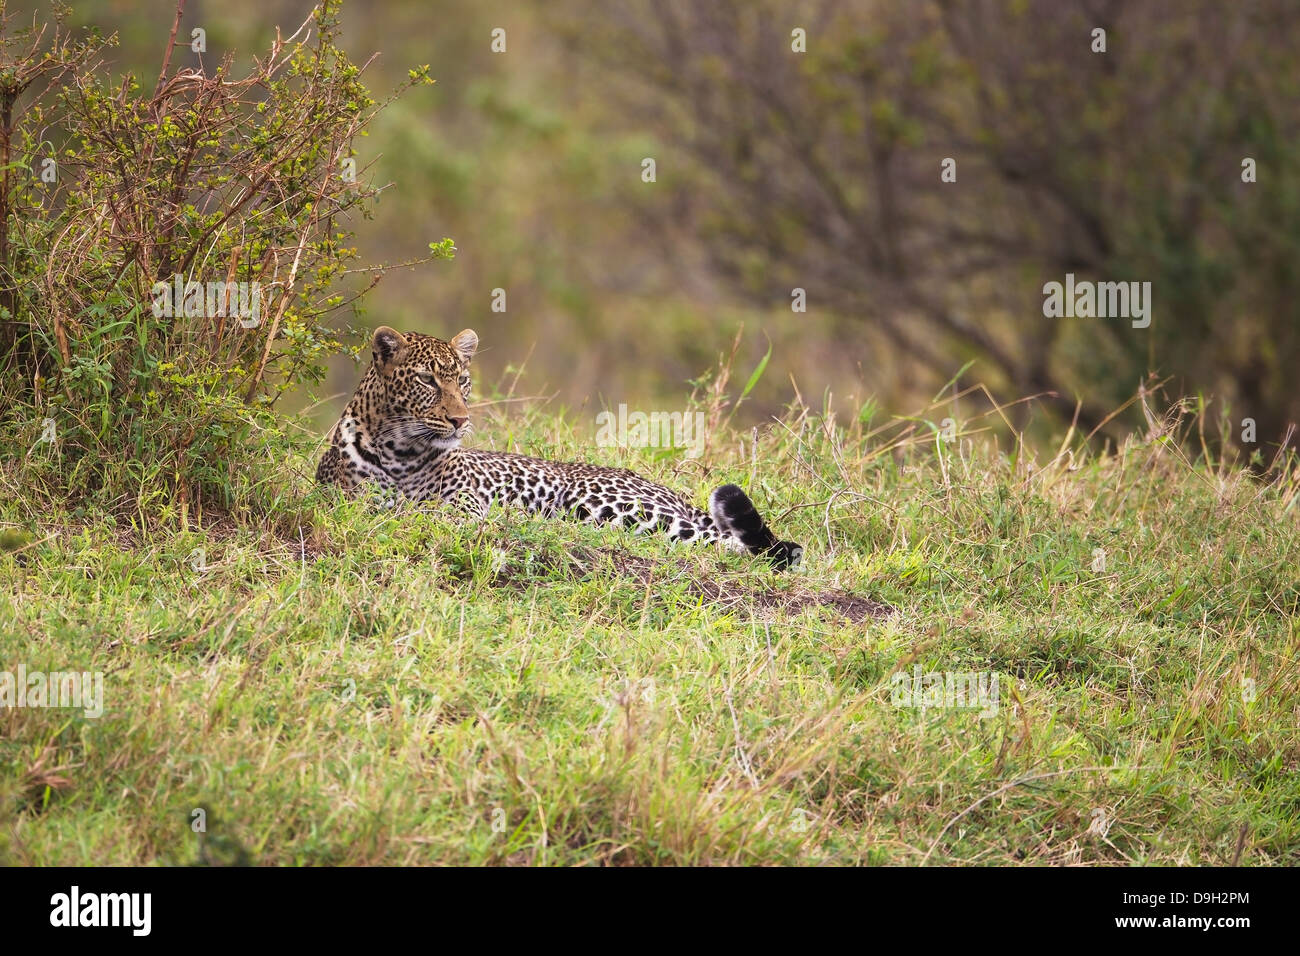 Leopard at Talek River, Masai Mara, Kenya Stock Photo